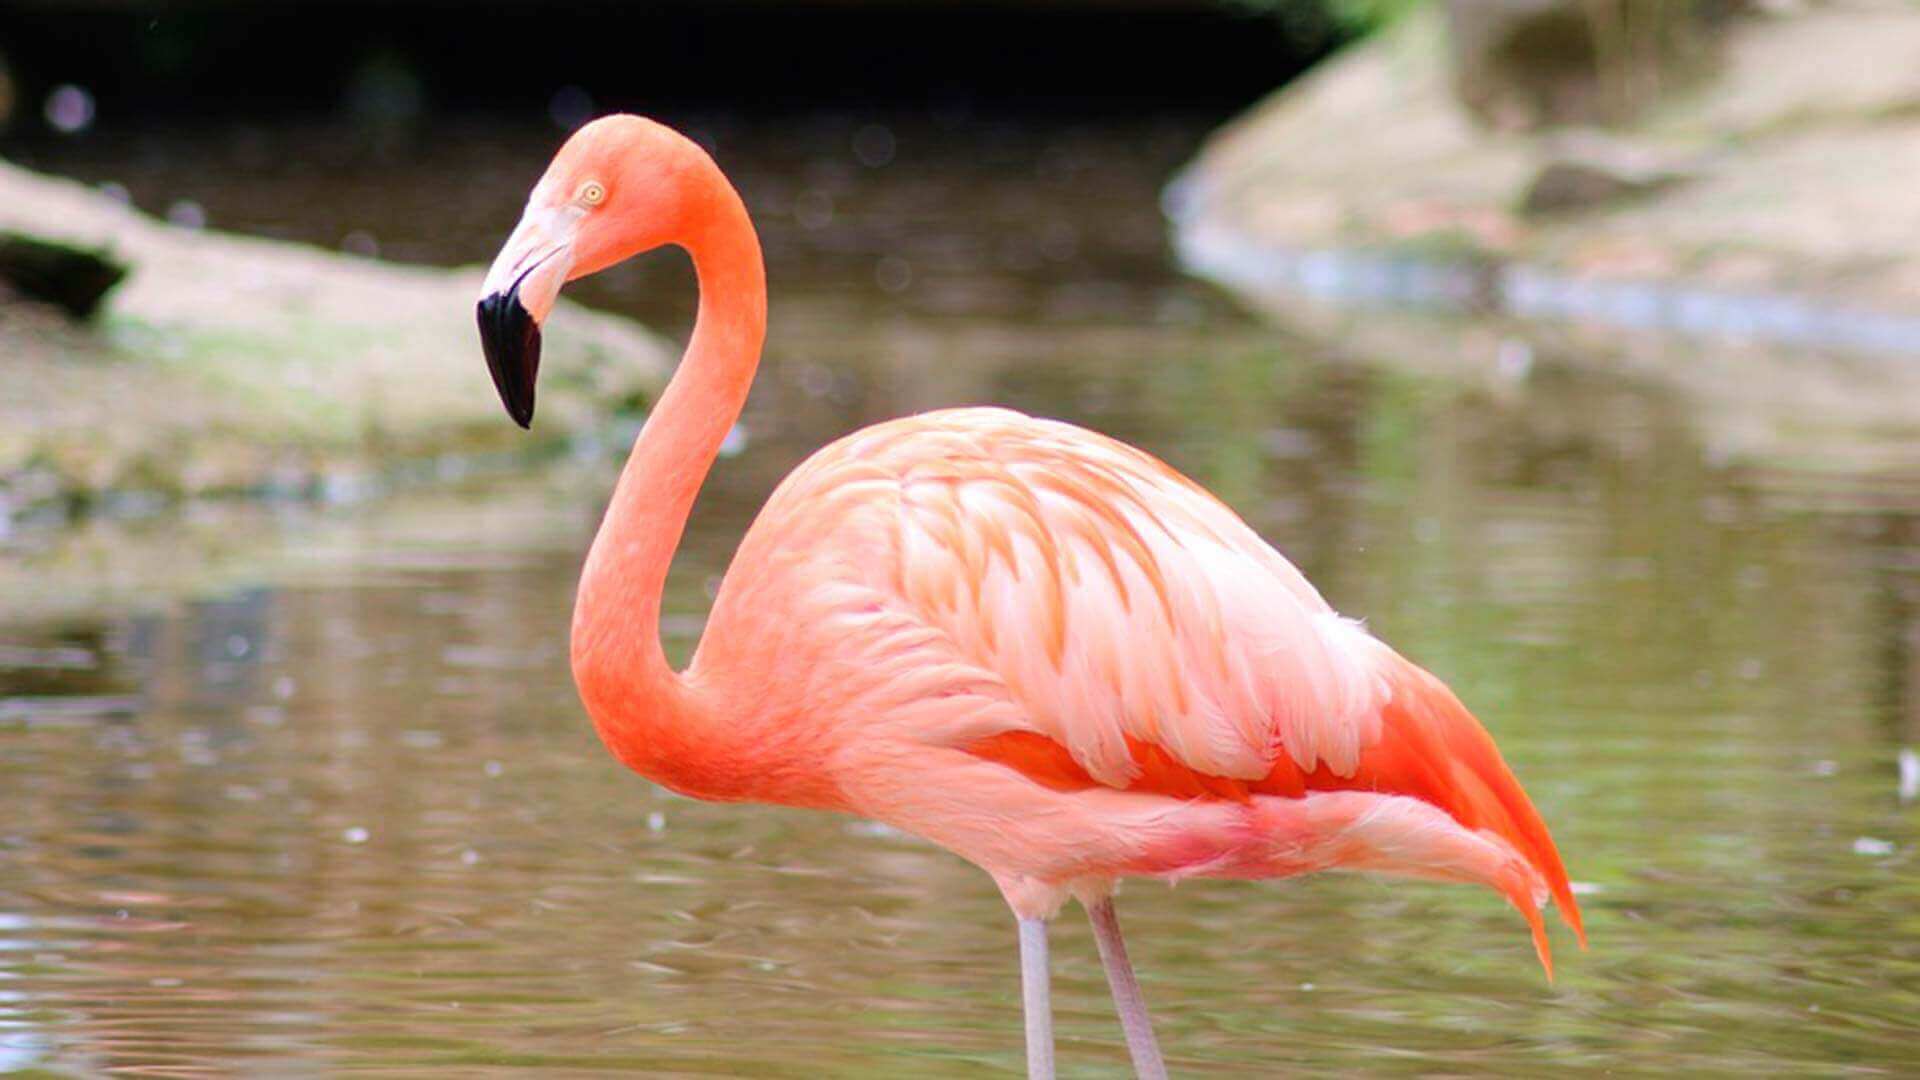 Galapagos rose Flamingo pataugeant dans la piscine d'eau salée